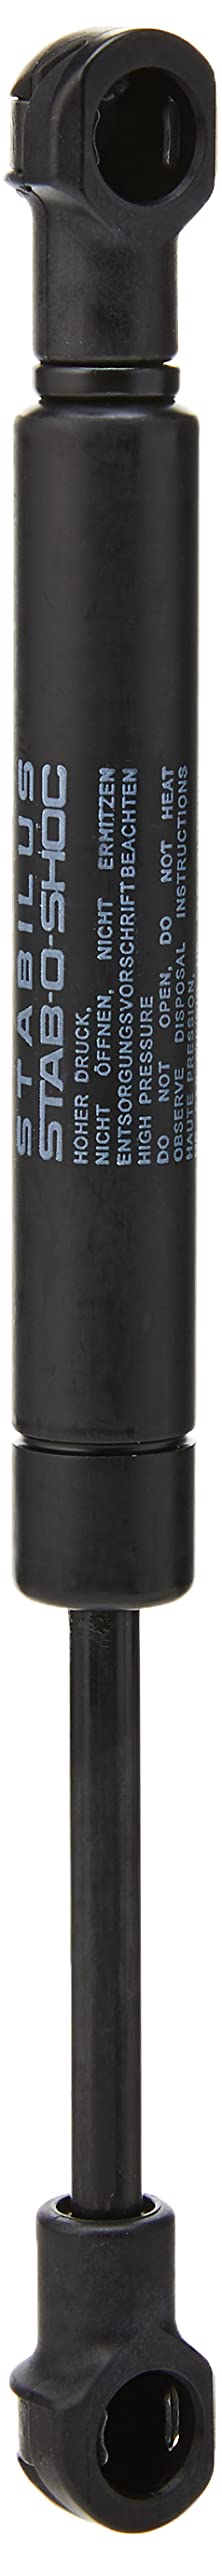 febi bilstein 37820 Gasdruckfeder für Fußfeststellbremse , 1 Stück, schwarz von febi bilstein